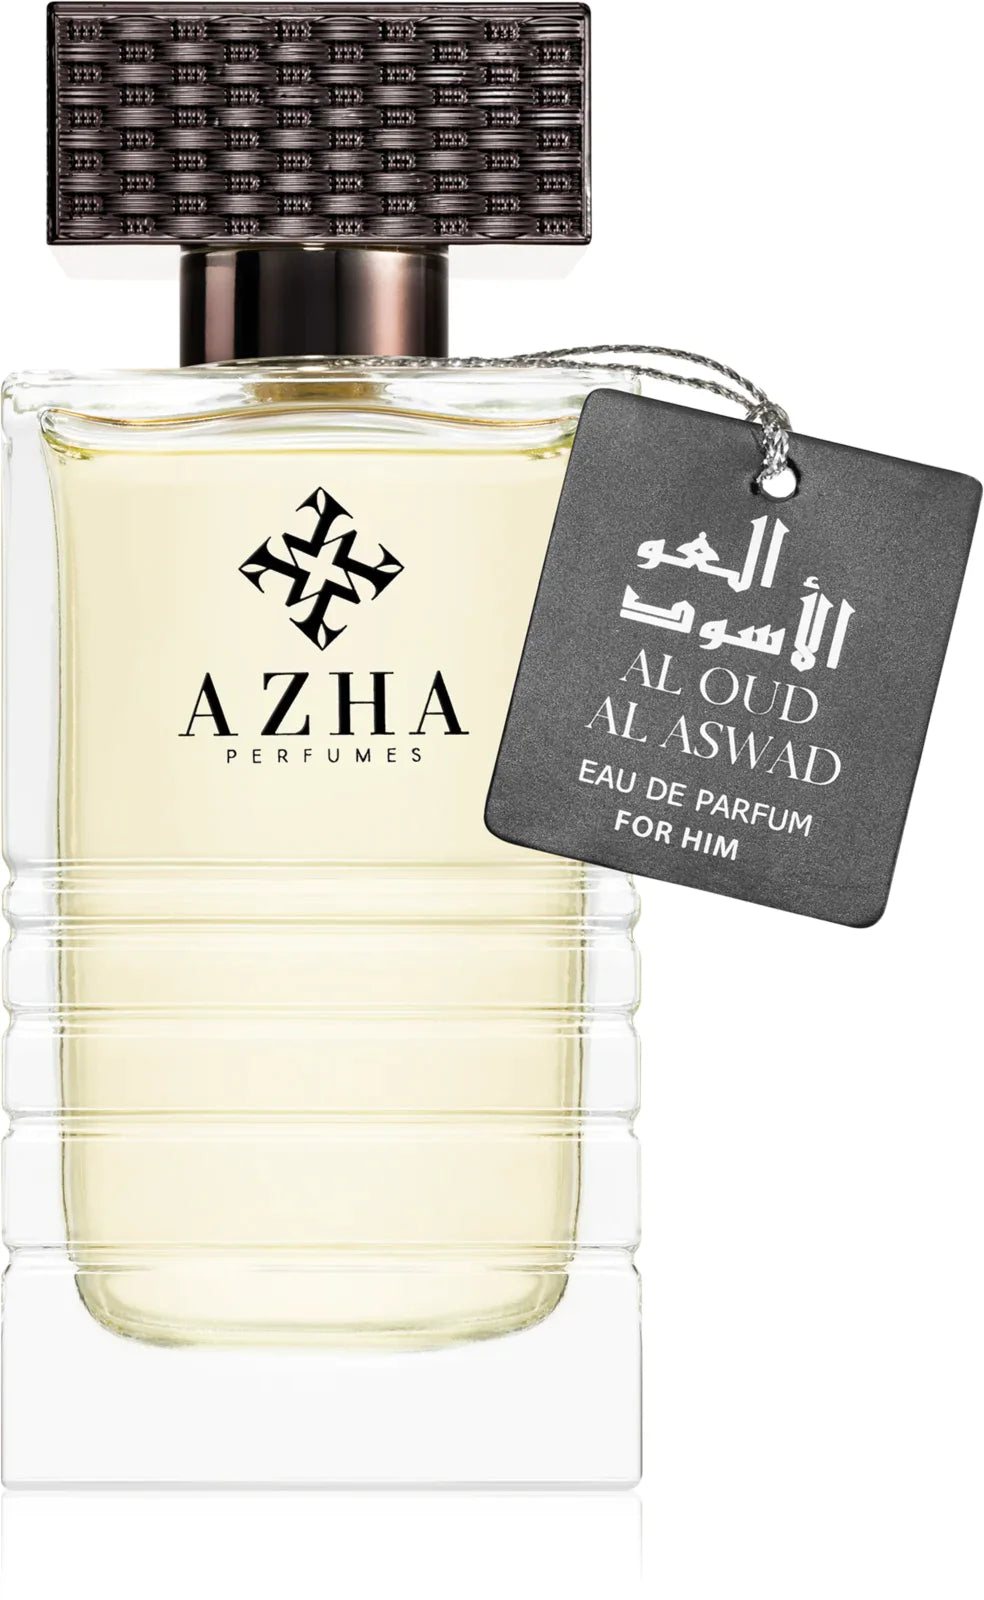 Al Oud Al Aswad Eau de Parfum for Him - Perfume Planet 